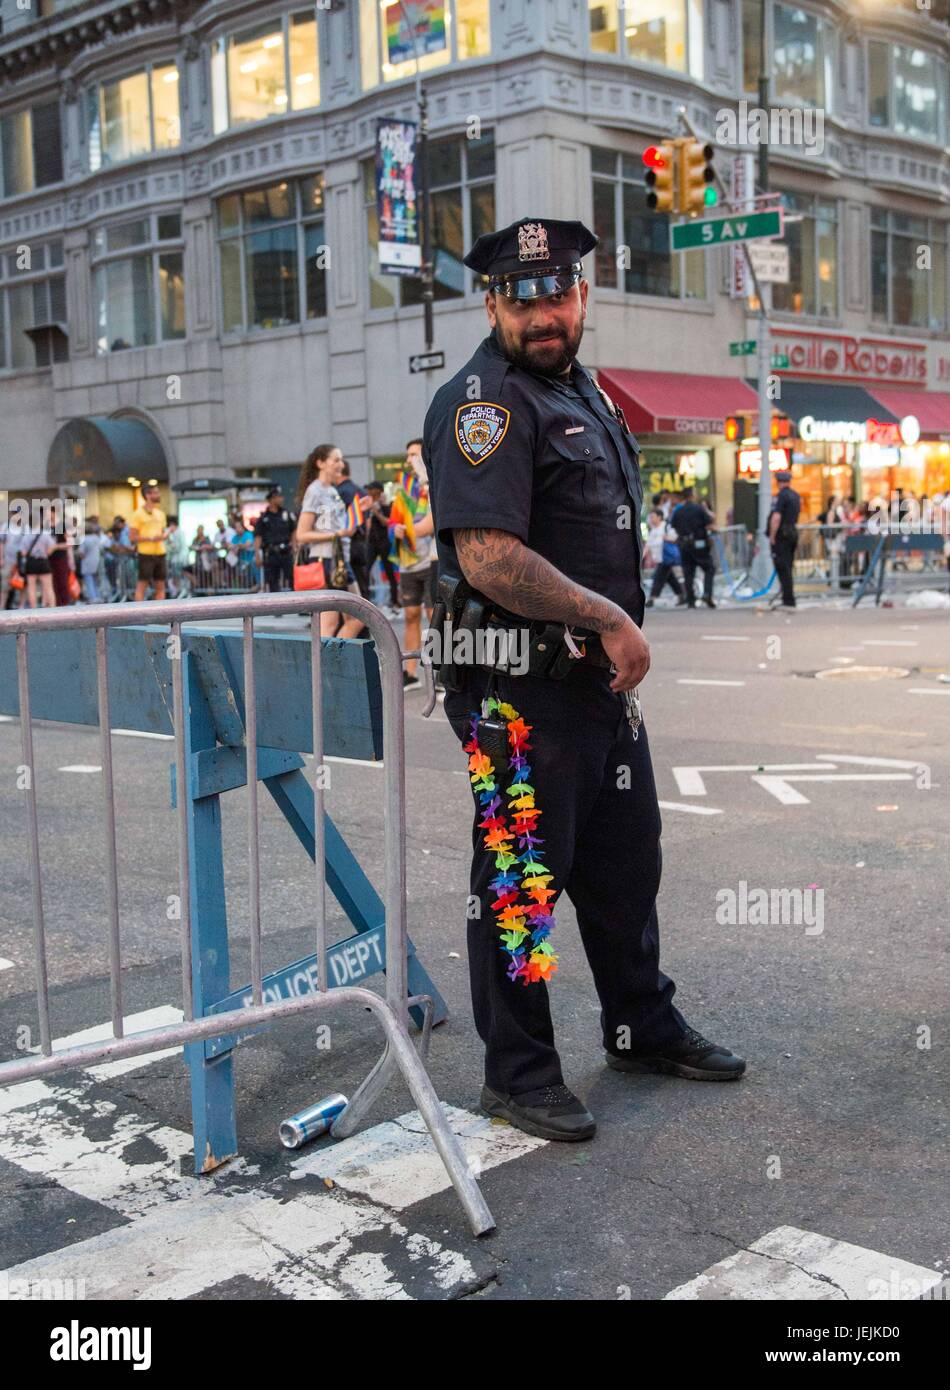 New York, Stati Uniti d'America. Il 25 giugno, 2017. Scene dal Giugno 25, 2017 Pride Parade. Un ufficio di polizia il compito di custodire la folla ha un po' di divertimento indossando un arcobaleno di lei e con un commento irriverente posa per una foto. Il primo marzo si è tenuto nel 1970 e da allora è diventata un annuale dei diritti civili di dimostrazione. Nel corso degli anni, il suo scopo ha ampliato per includere il riconoscimento della lotta contro l' AIDS e per ricordare coloro che ci hanno perso per malattia, di violenza e di abbandono. Il mese di marzo è una celebrazione di vita LGBTQ e comunità. Credito: Brigette Supernova/Alamy Live News Foto Stock